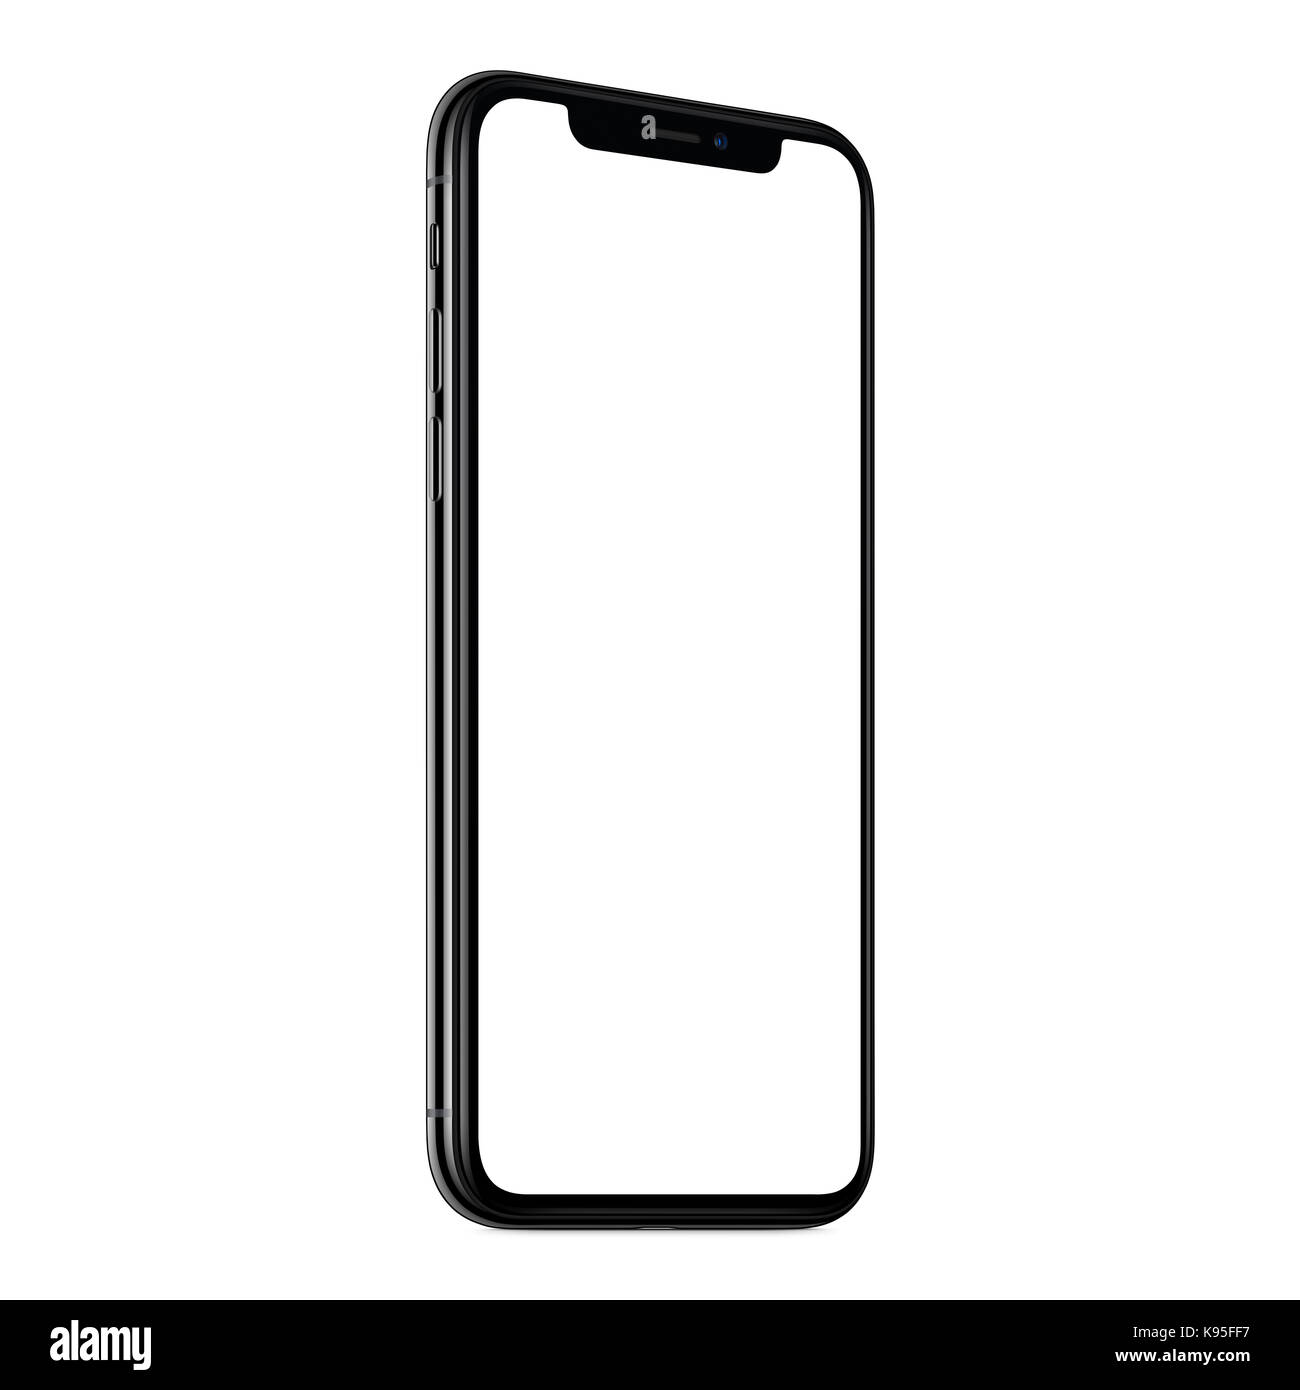 Smartphone mockup ähnlich iPhone X. Neue moderne schwarze rahmenlose gewinkelt CCW smartphone Mockup mit weißer Bildschirm. Auf weissem Hintergrund. Stockfoto